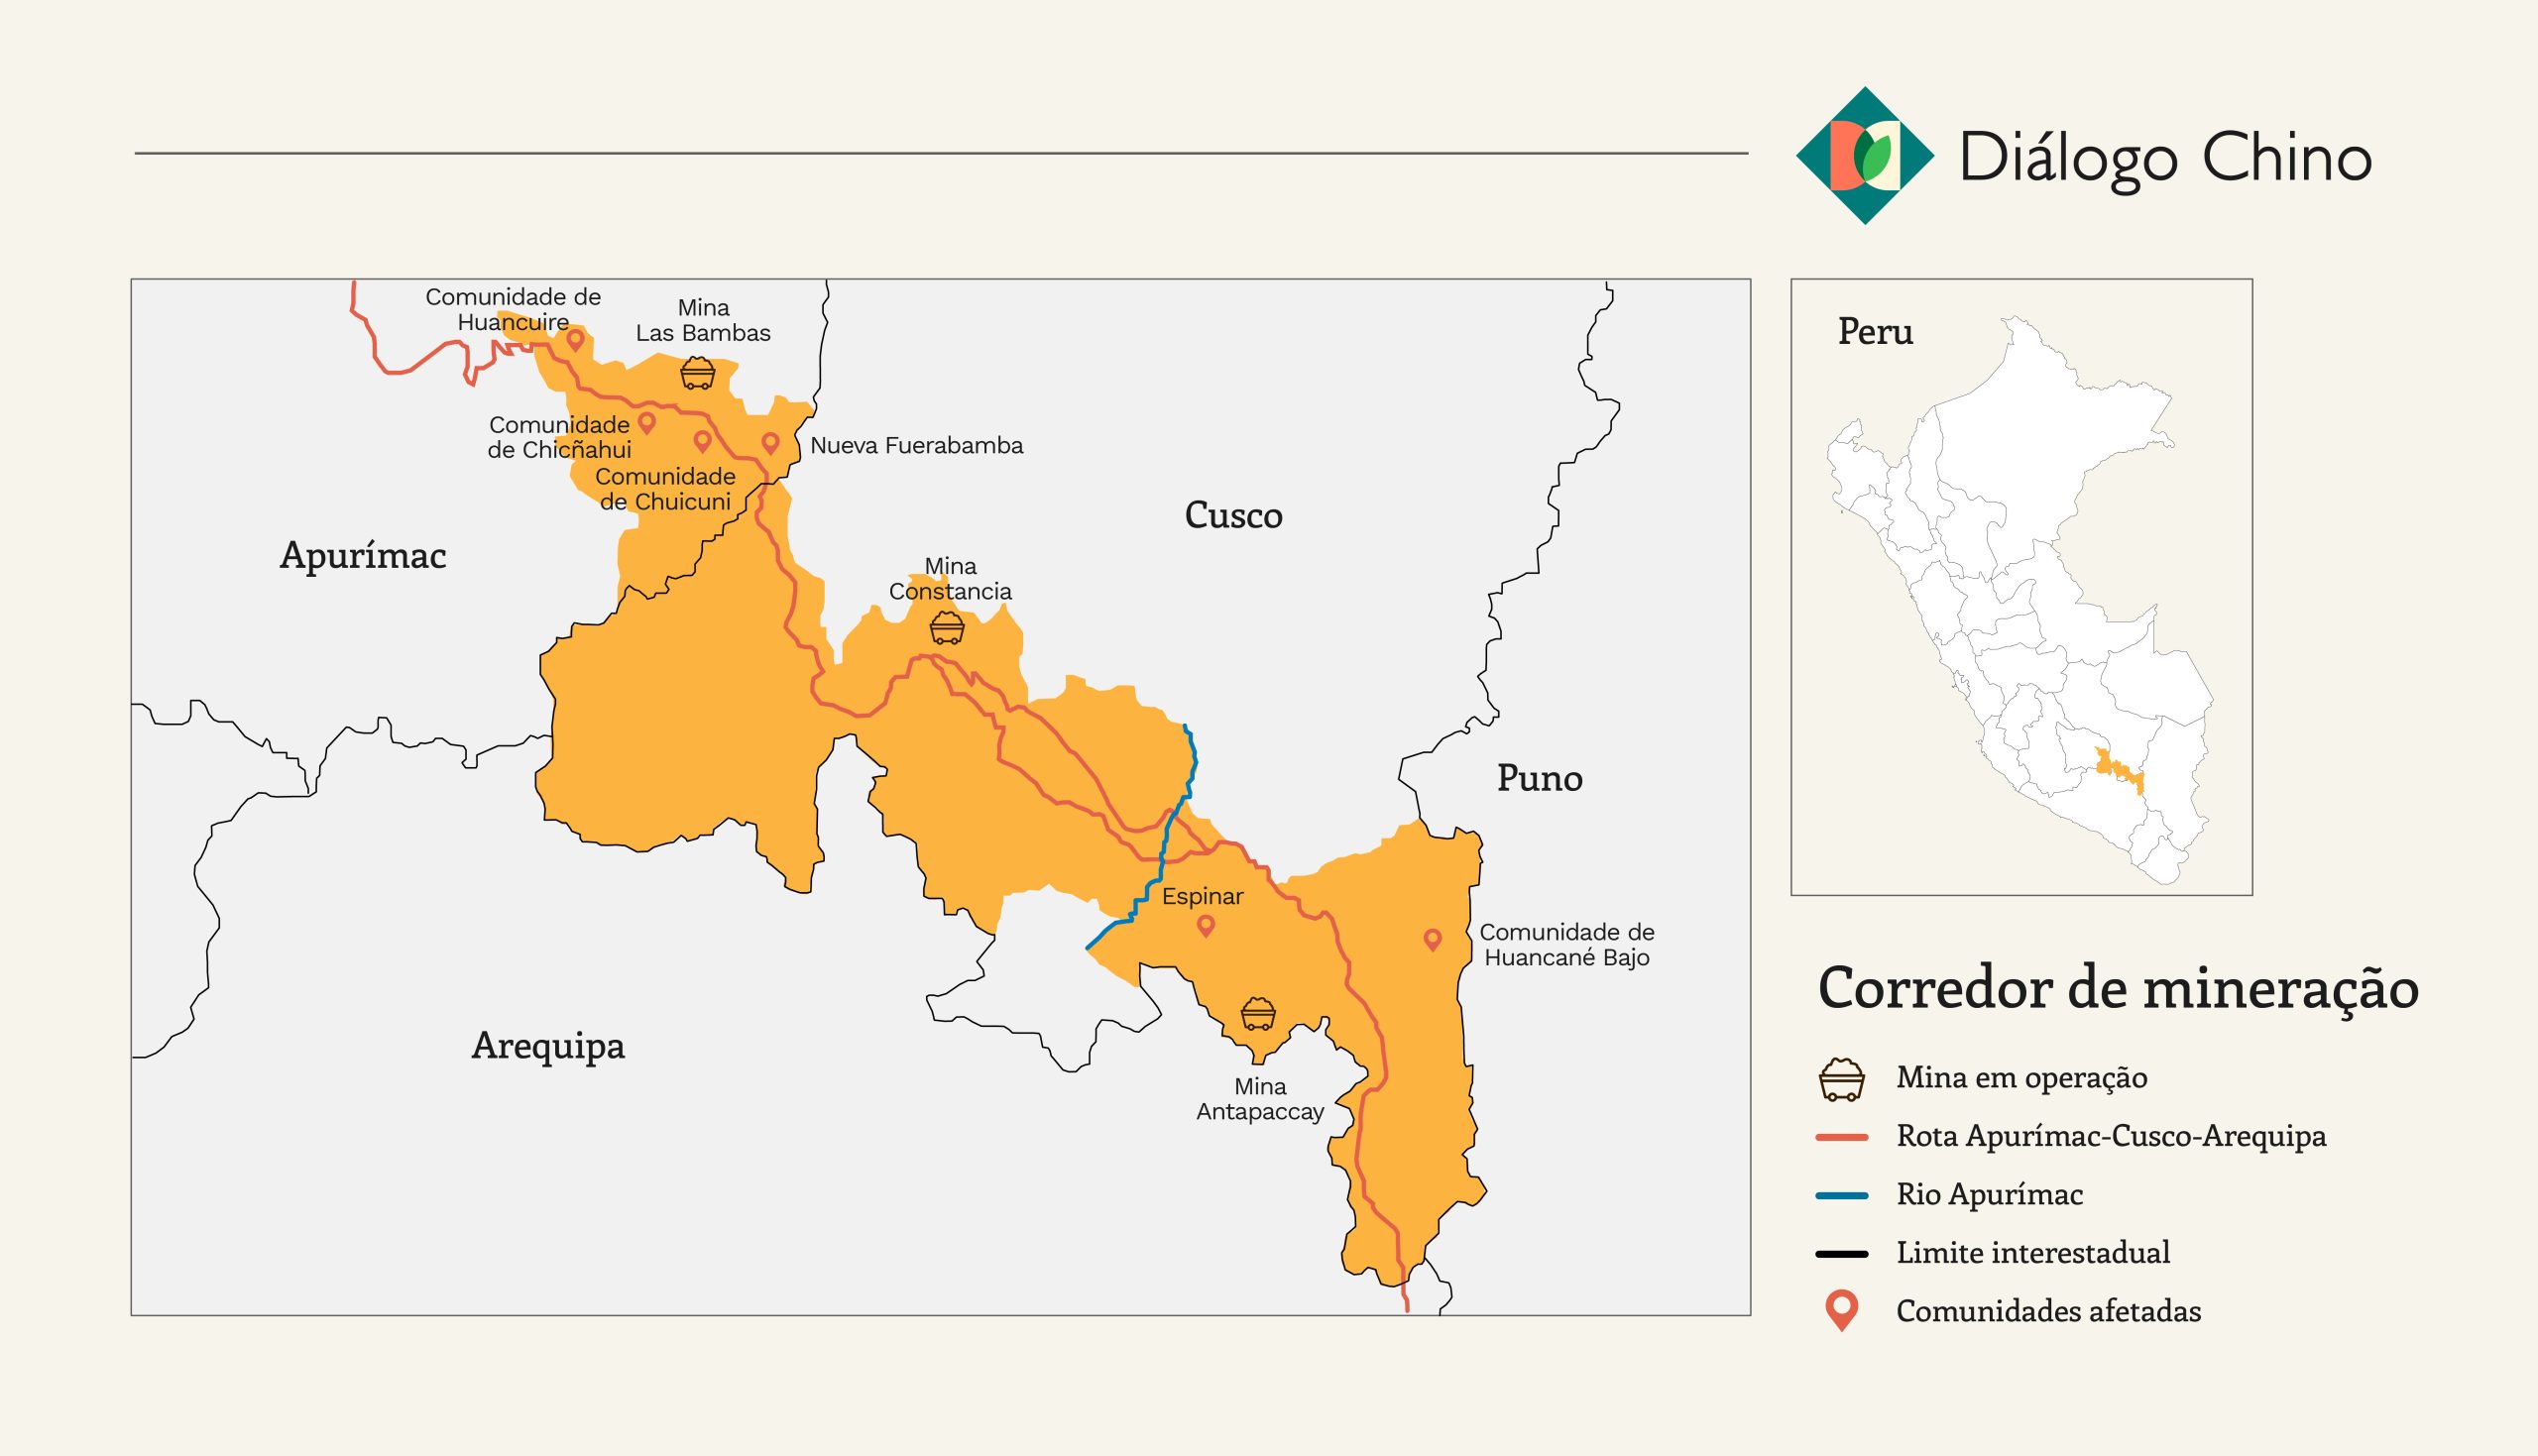 Um mapa do "corredor de mineração" do Peru mostrando as localizações dos principais locais de mineração e as comunidades afetadas por suas operações